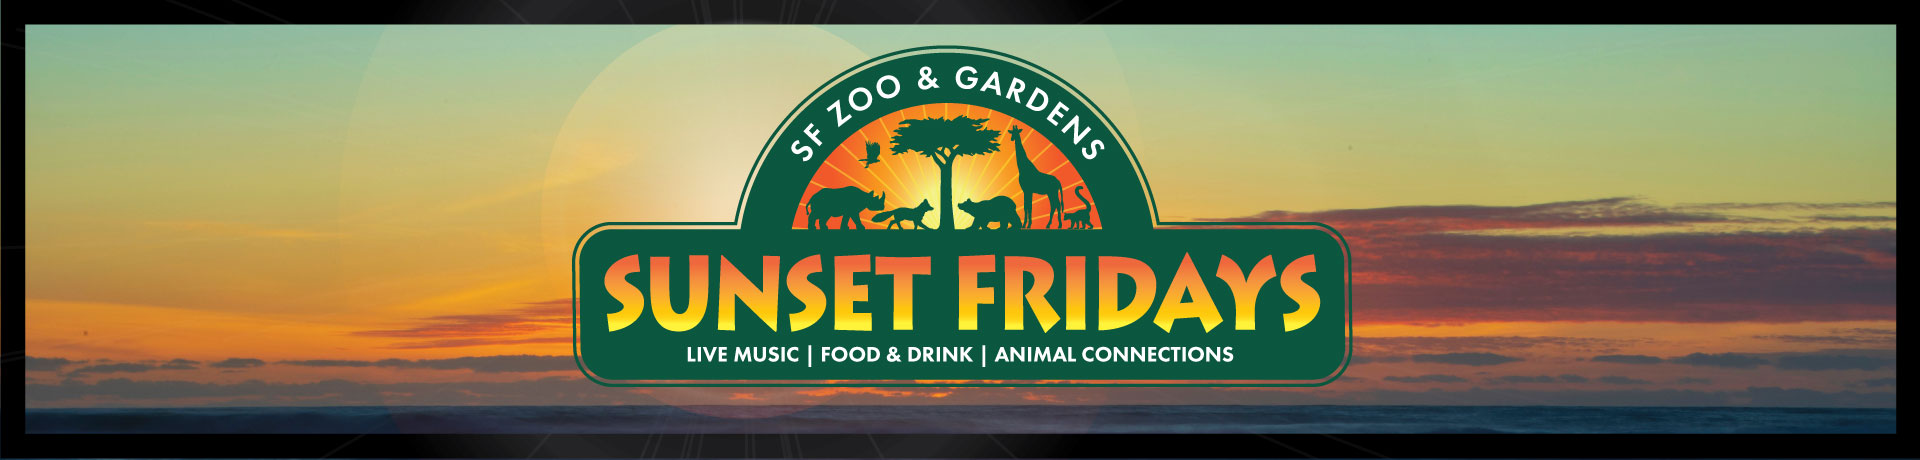 Sunset Fridays at SF Zoo